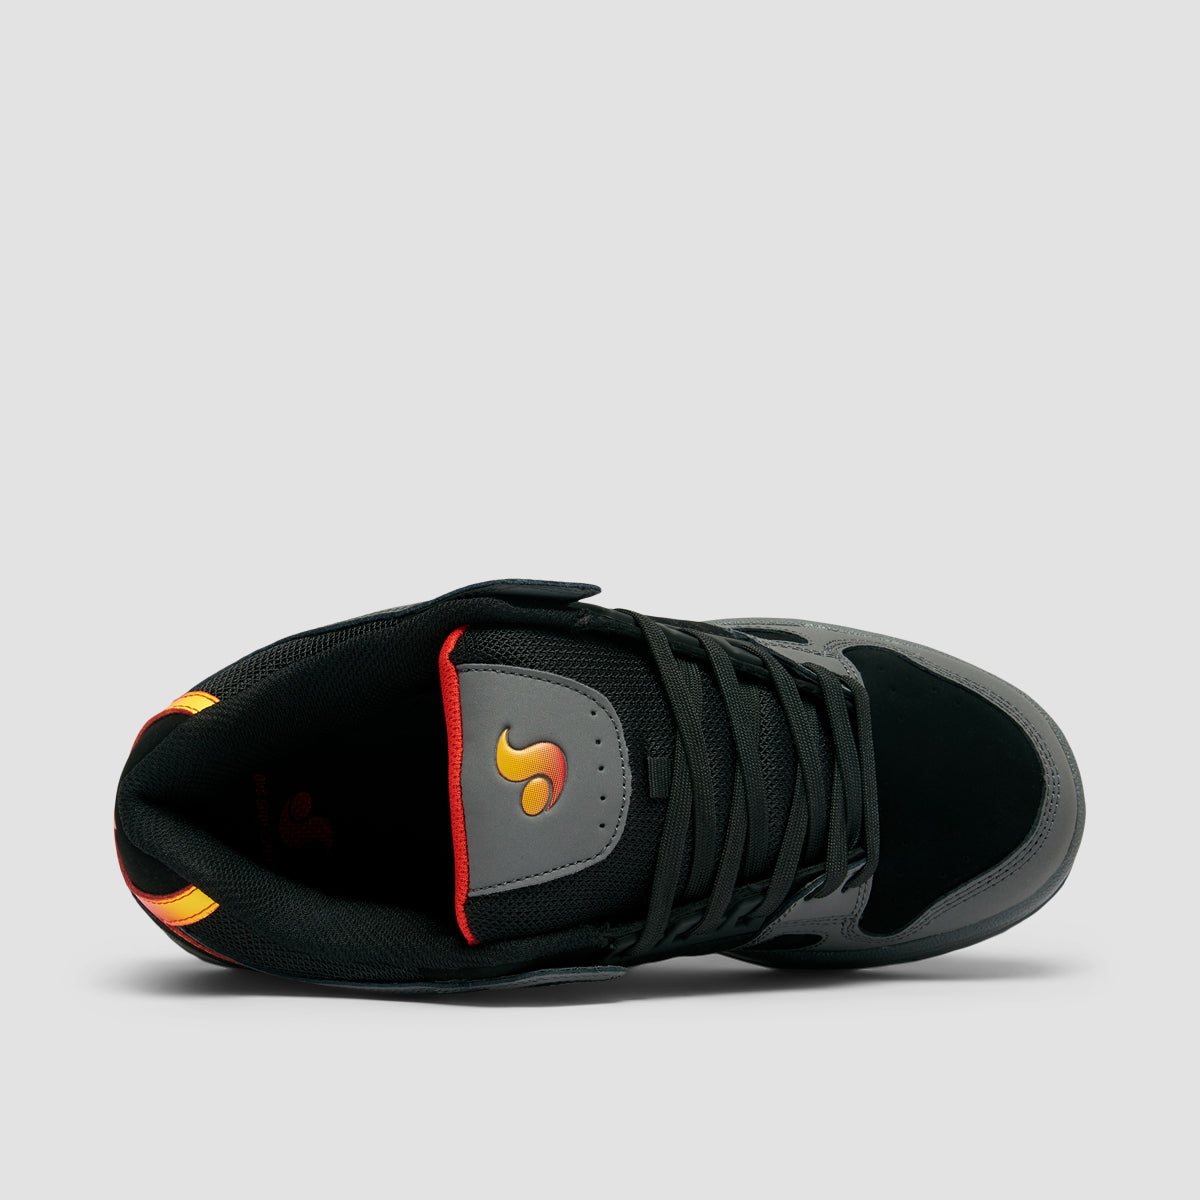 DVS Celsius Shoes - Charcoal/Black/Red Nubuck